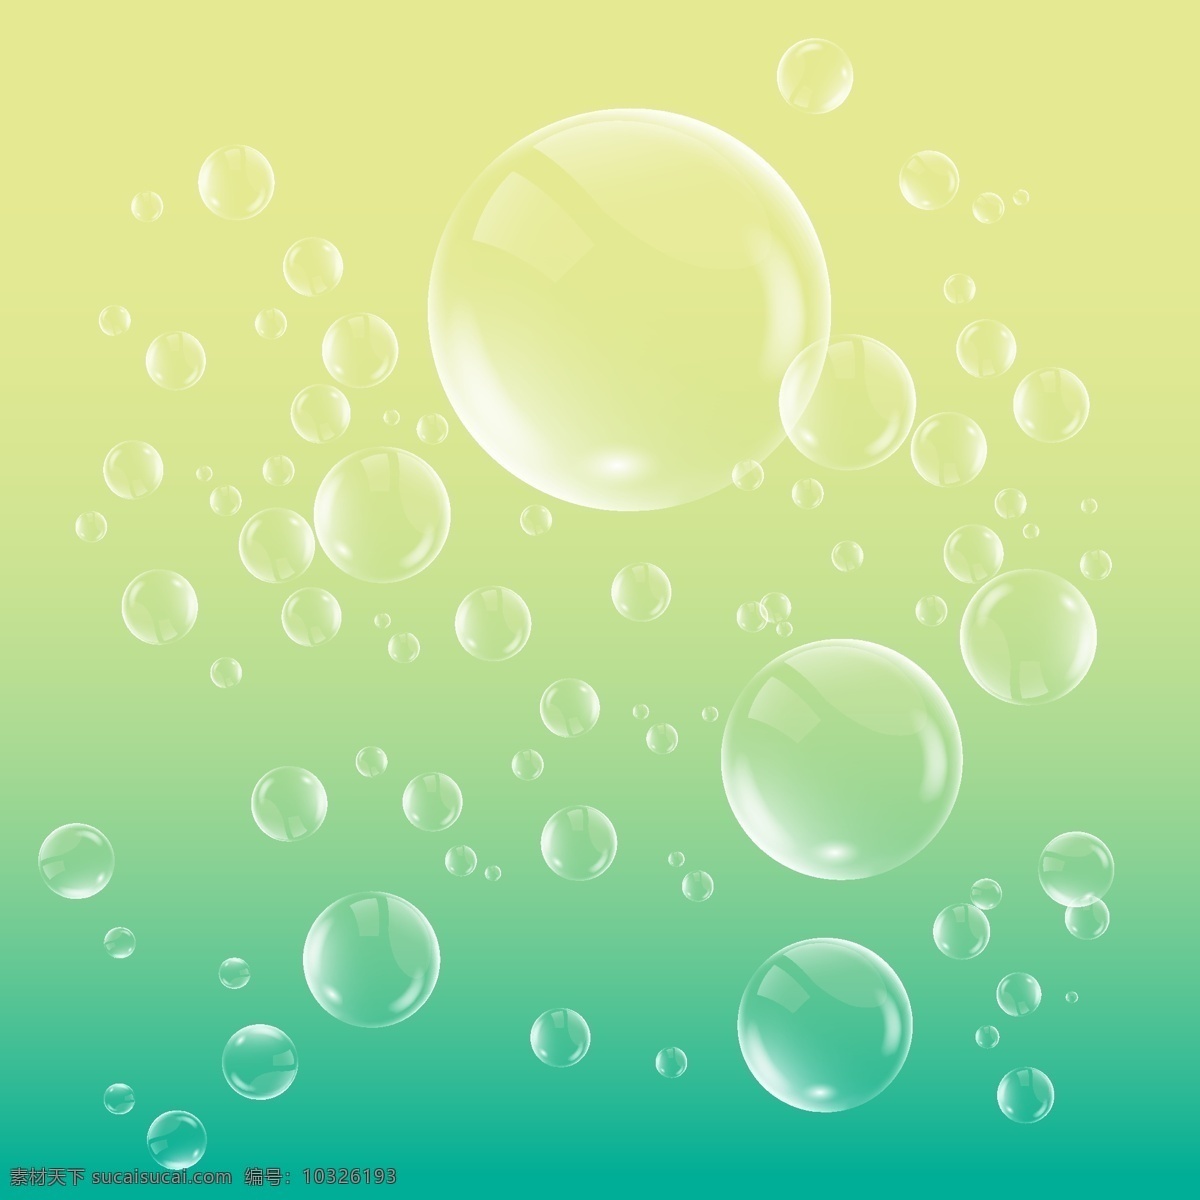 气泡 泡泡 透明泡泡 绿色背景 黄色背景 多彩泡泡 水泡 泡沬 气球 水珠 珠子 设计素材 背景